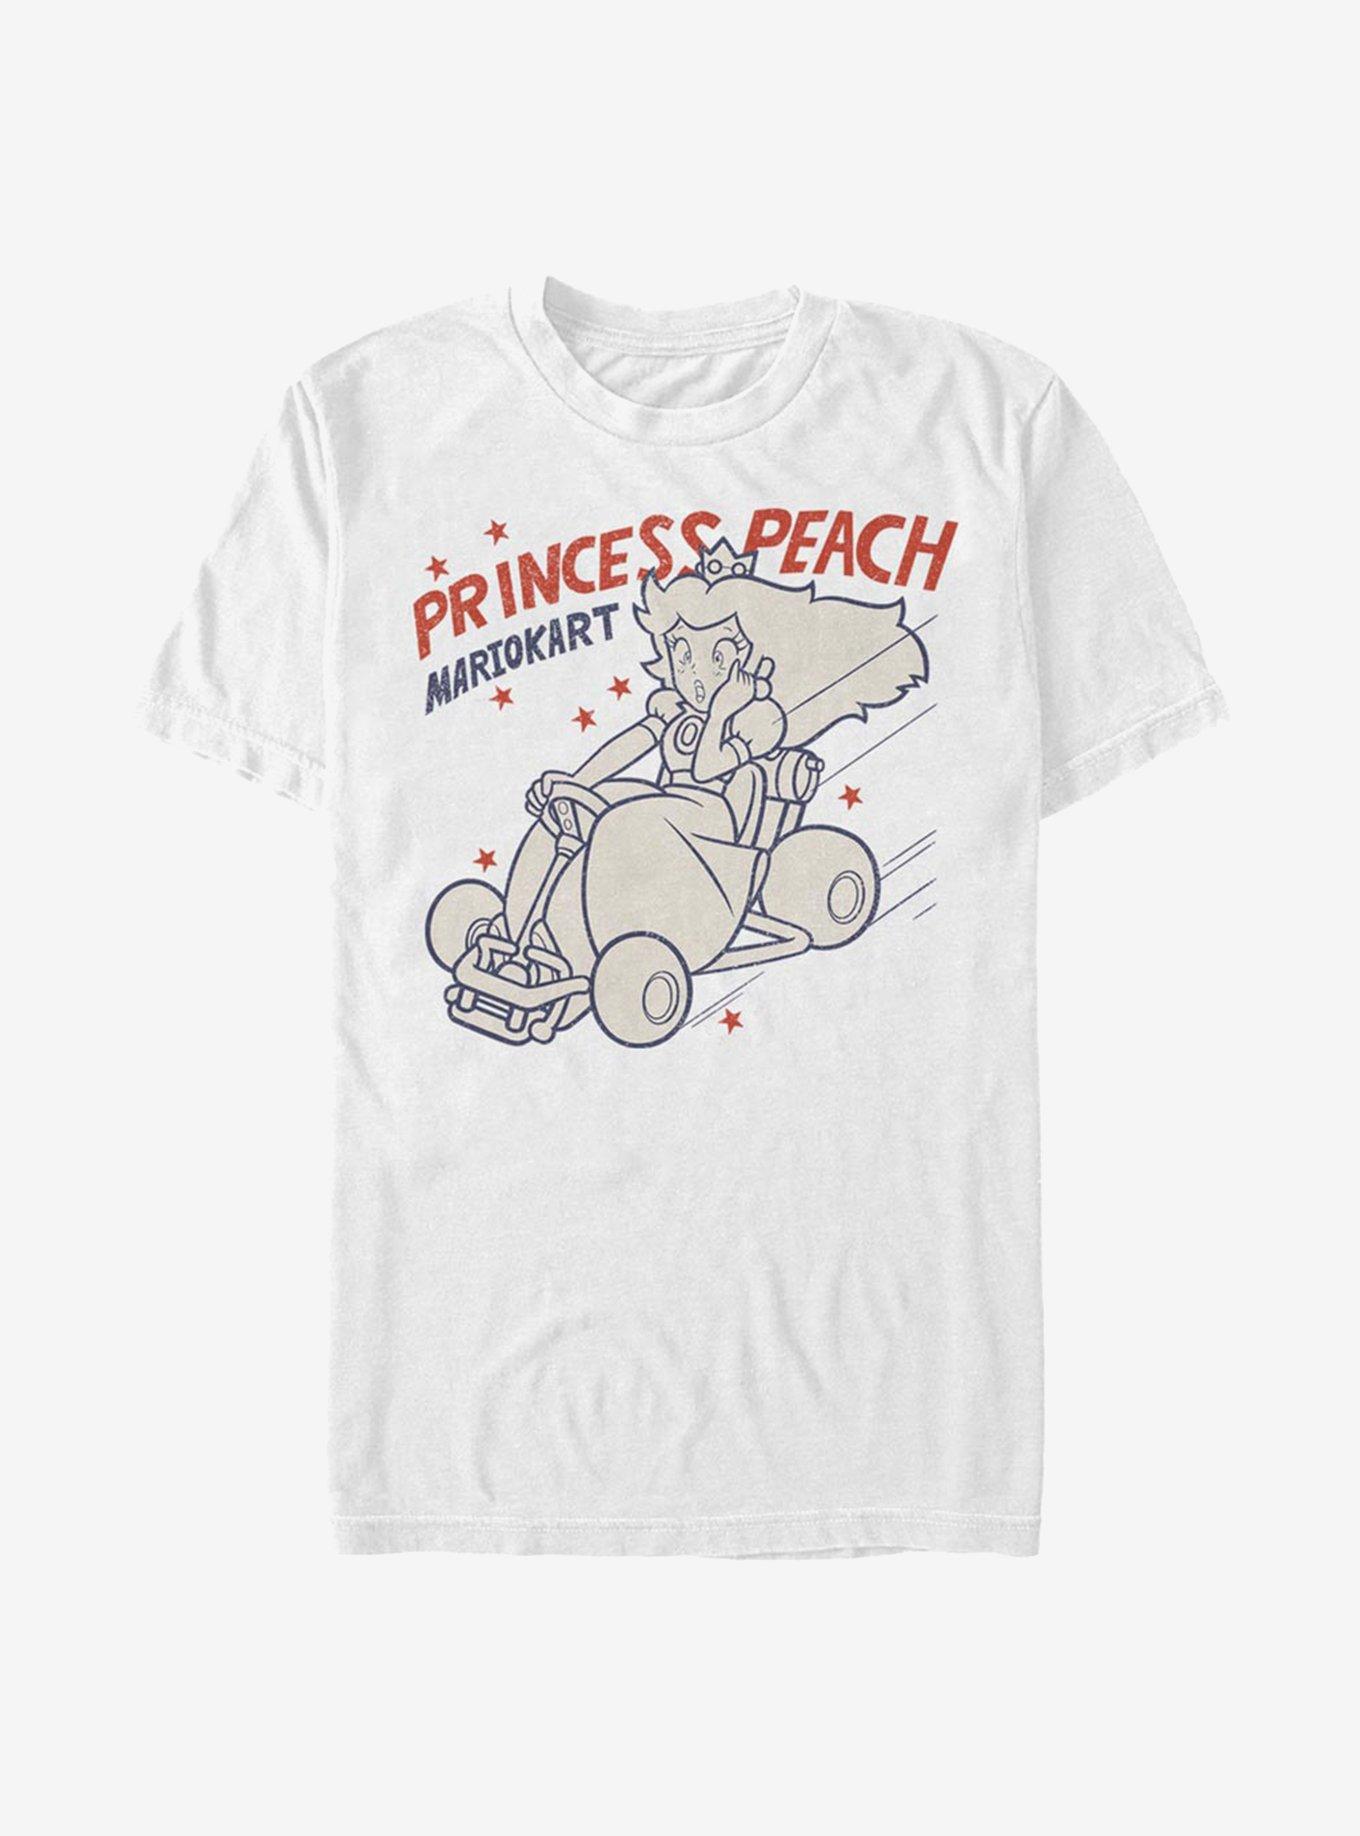 Super Mario Peach Kart T-Shirt